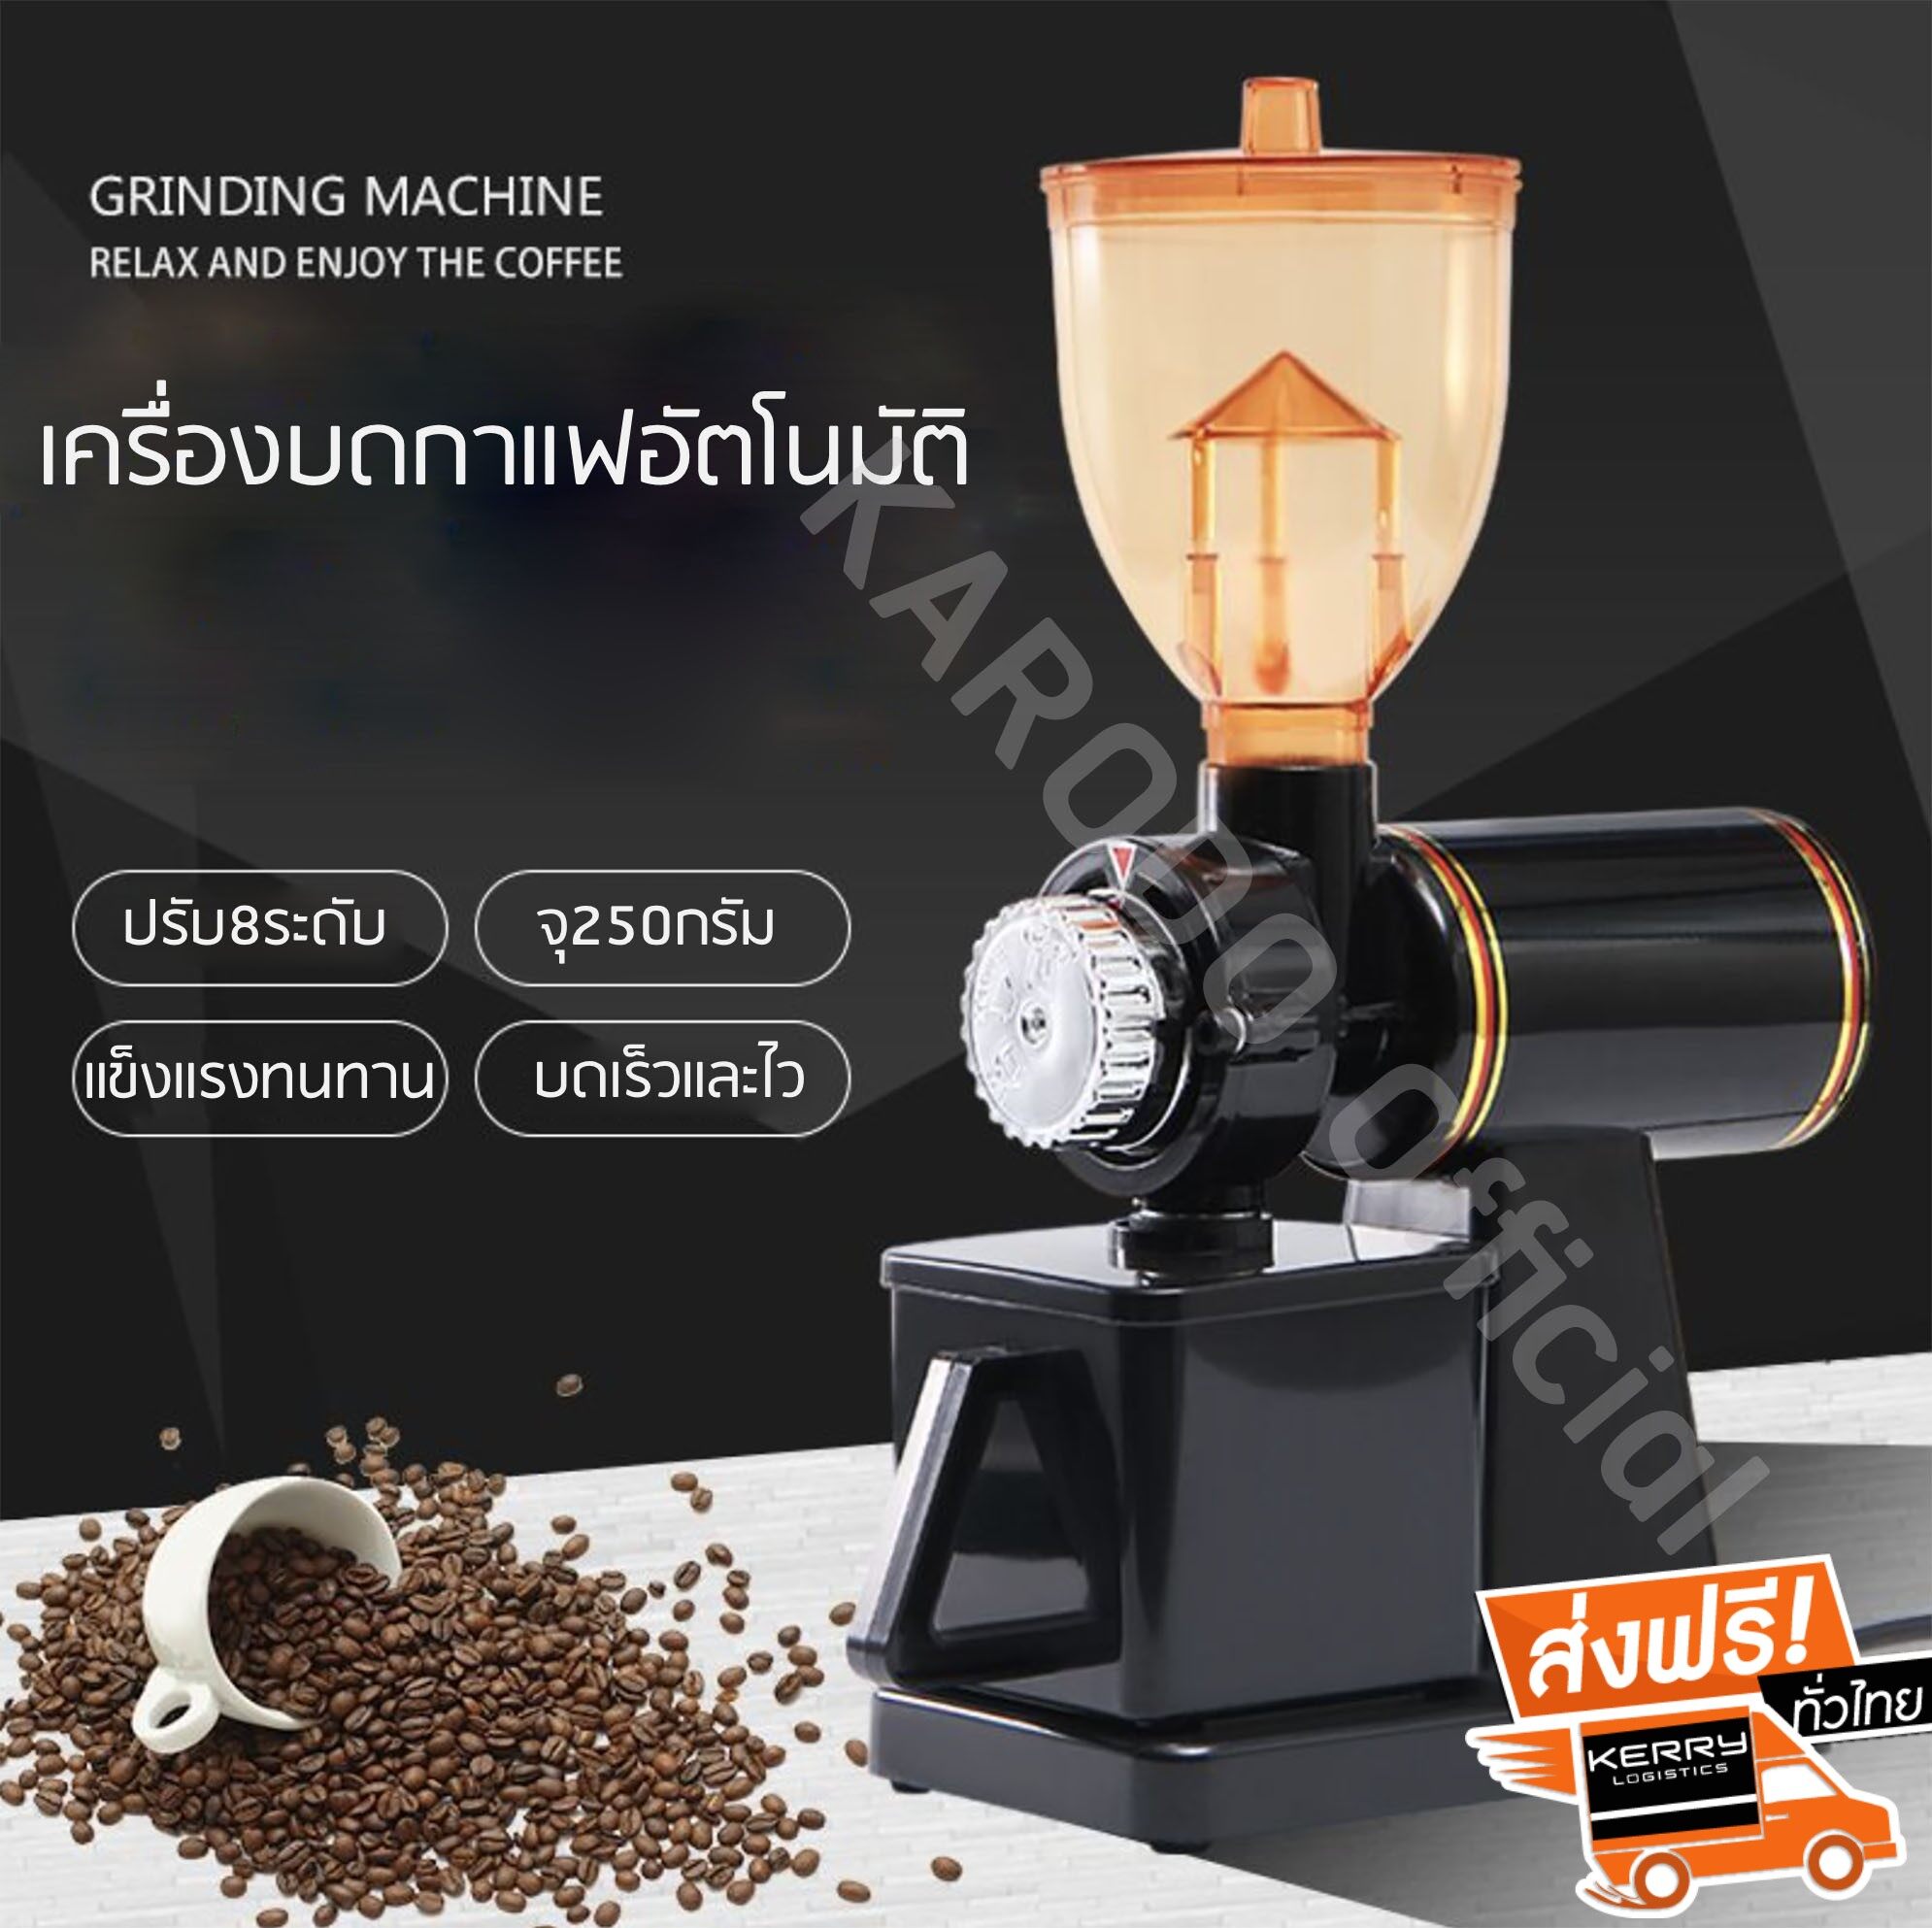 เครื่องบดกาแฟไฟฟ้าอัตโนมัติ จุเมล็ดกาแฟ 250 กรัม ปรับละเอียด 8 ระดับ ส่งฟรี